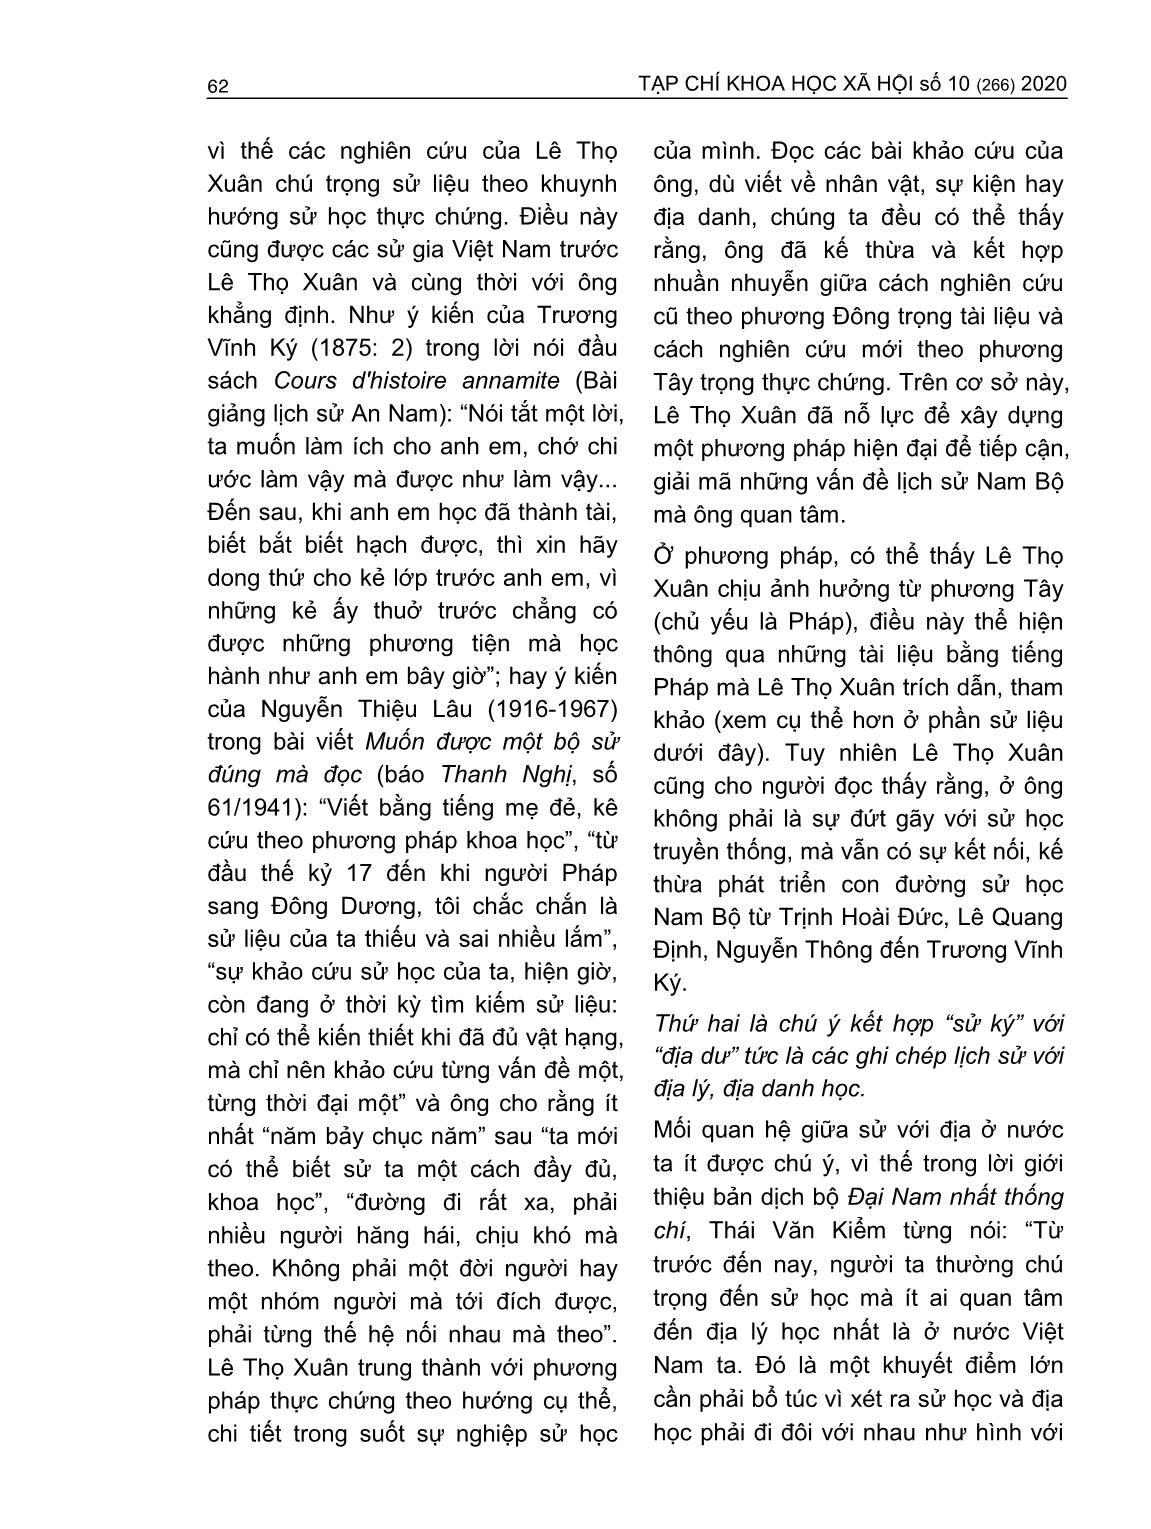 Đóng góp của Lê Thọ Xuân trong nghiên cứu lịch sử Nam Bộ triều Nguyễn thế kỷ XIX trang 3